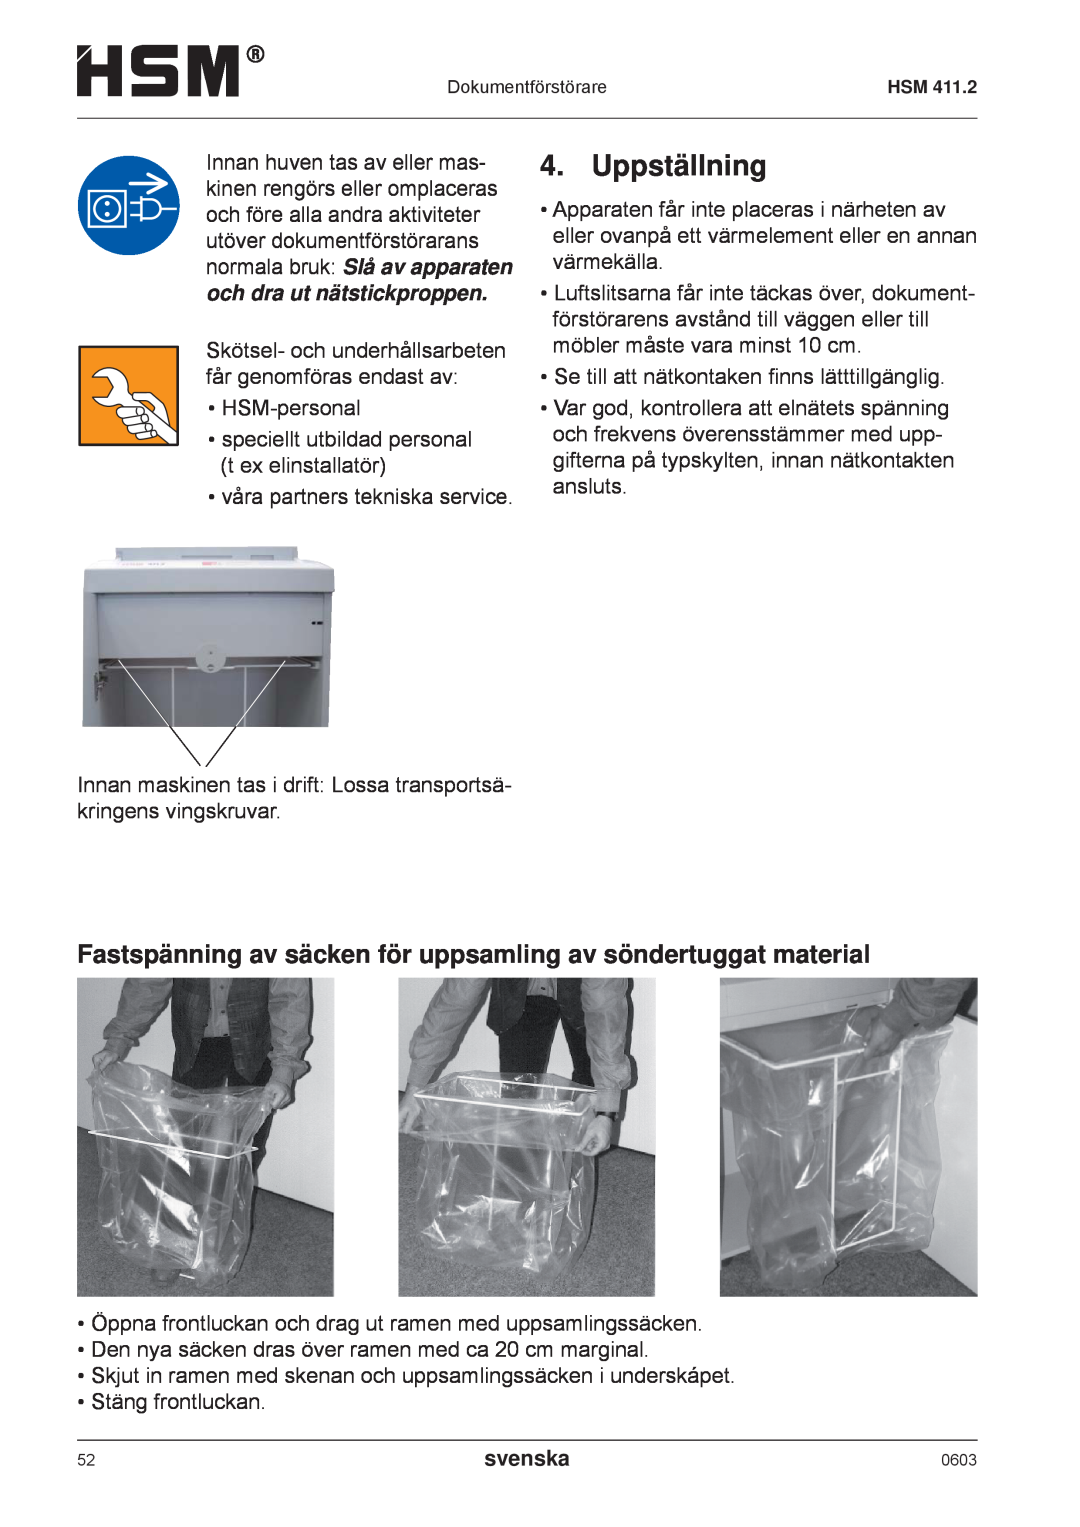 HSM HSM 411.2 operating instructions Uppställning, Fastspänning av säcken för uppsamling av söndertuggat material, svenska 